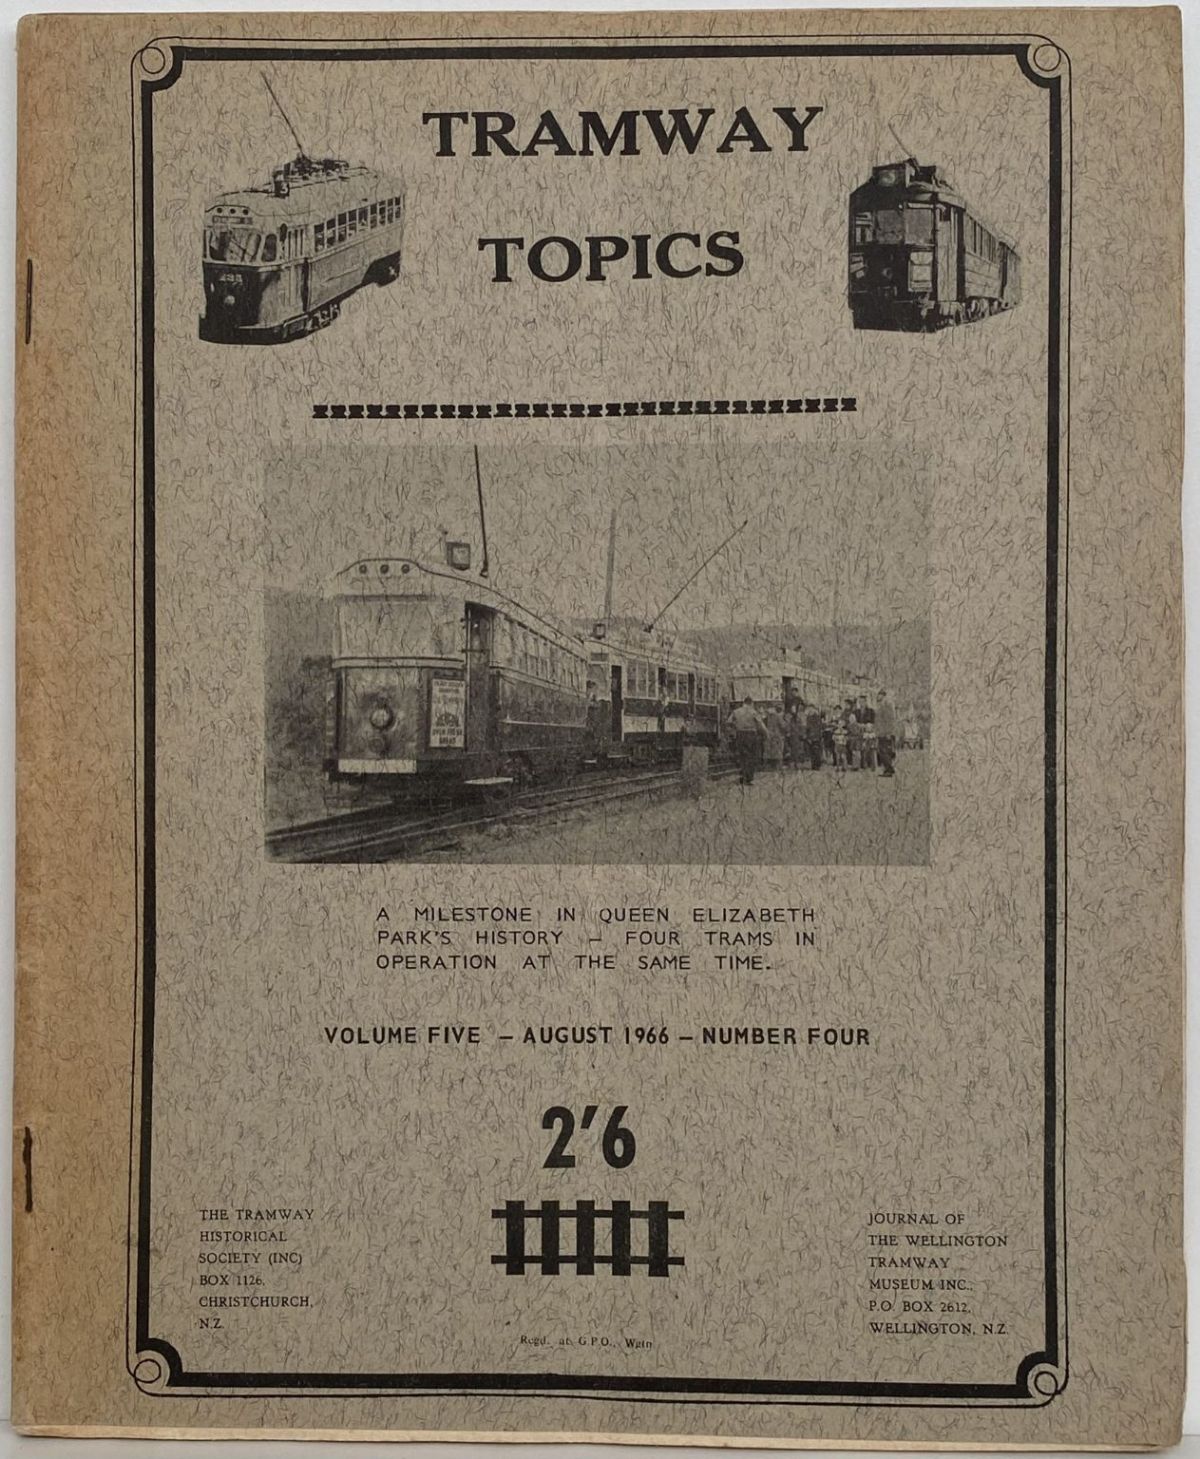 TRAMWAY TOPICS Vol 5, No 4, August 1966